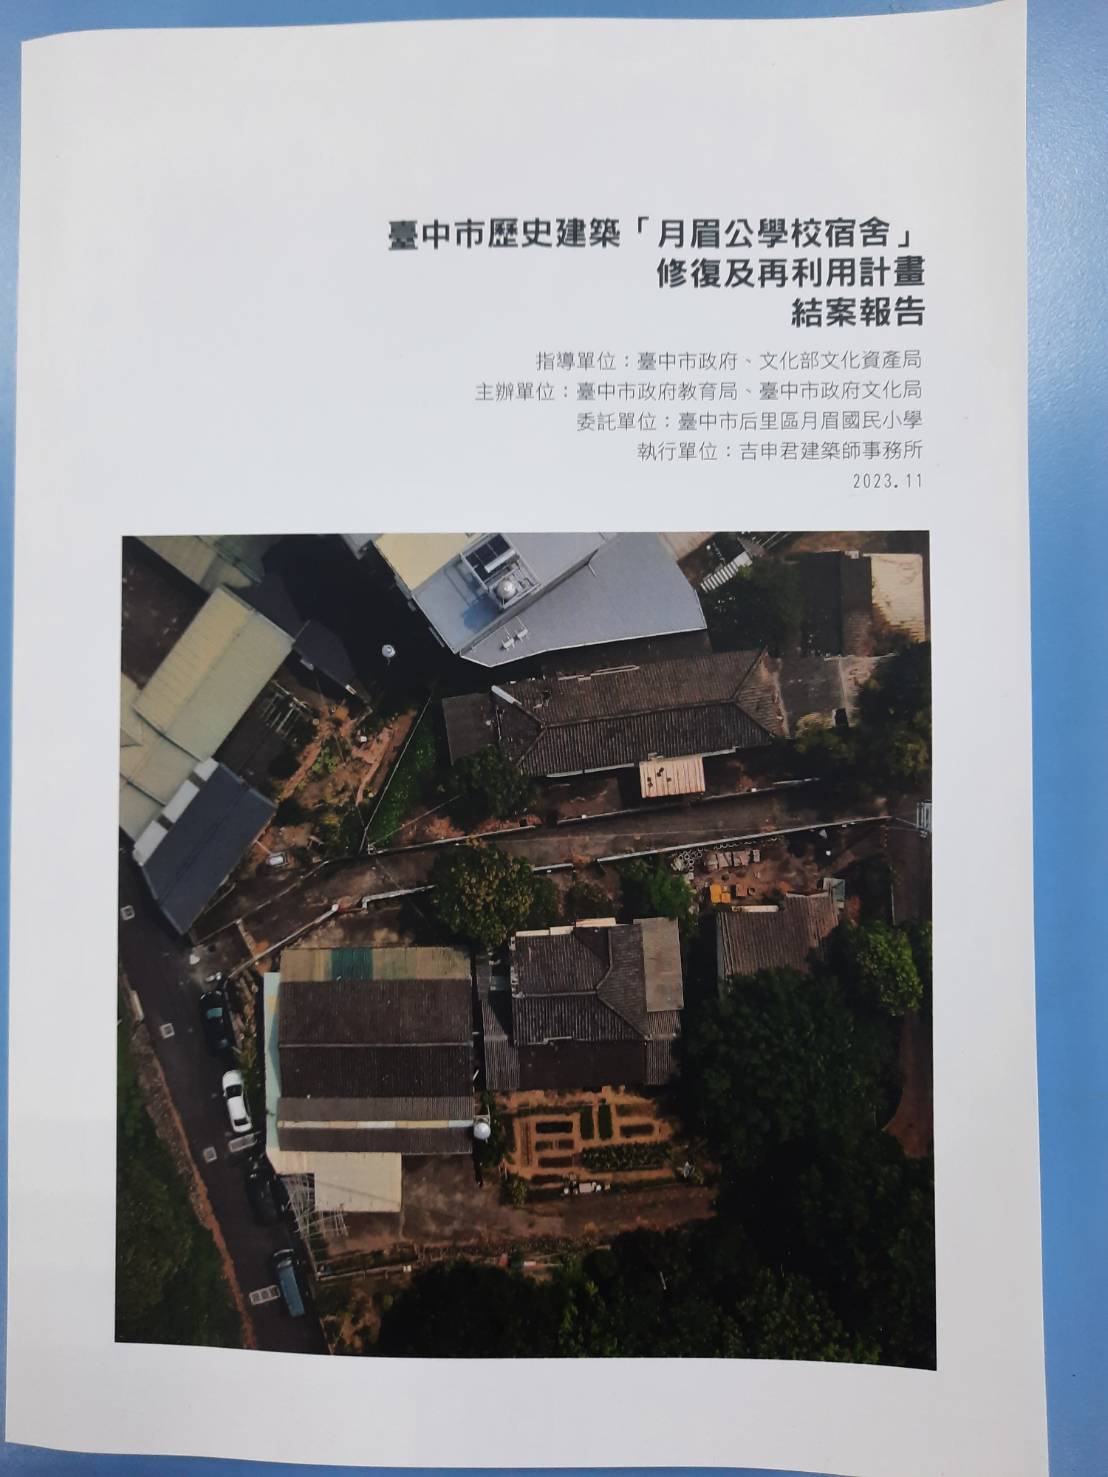 臺中市歷史建築「月眉公學校宿舍」修復及再利用計畫結案報告